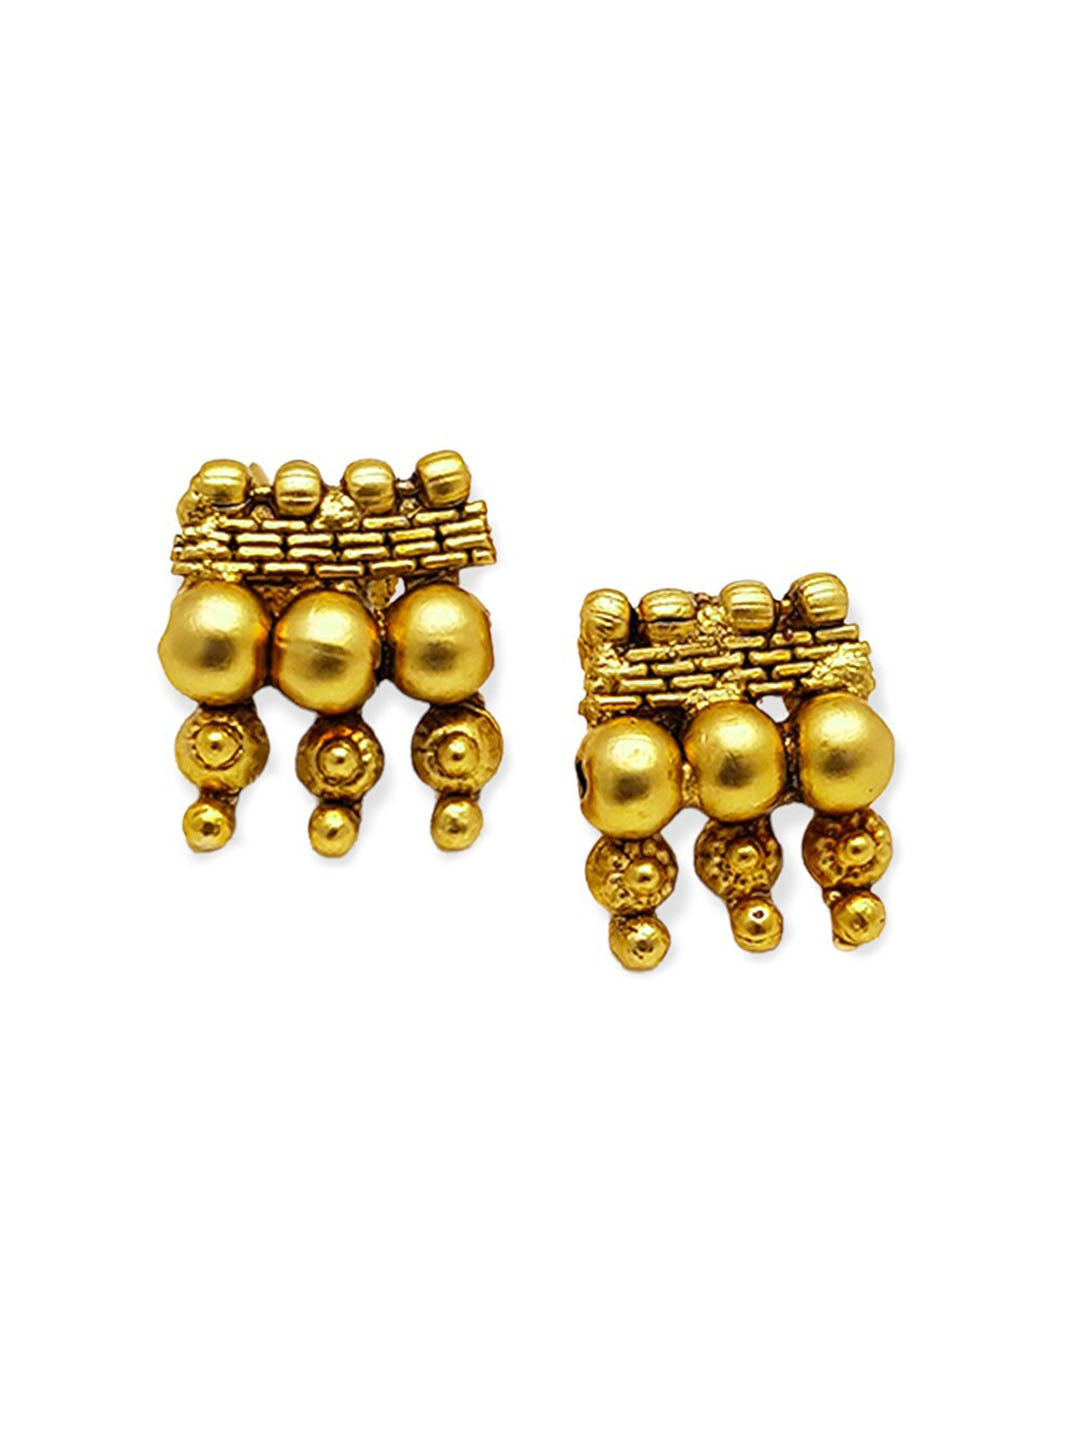 Long Short Earrings Gold Pearl Crystal Drop Dangle Angel Wing Post Back  Jewelry | eBay